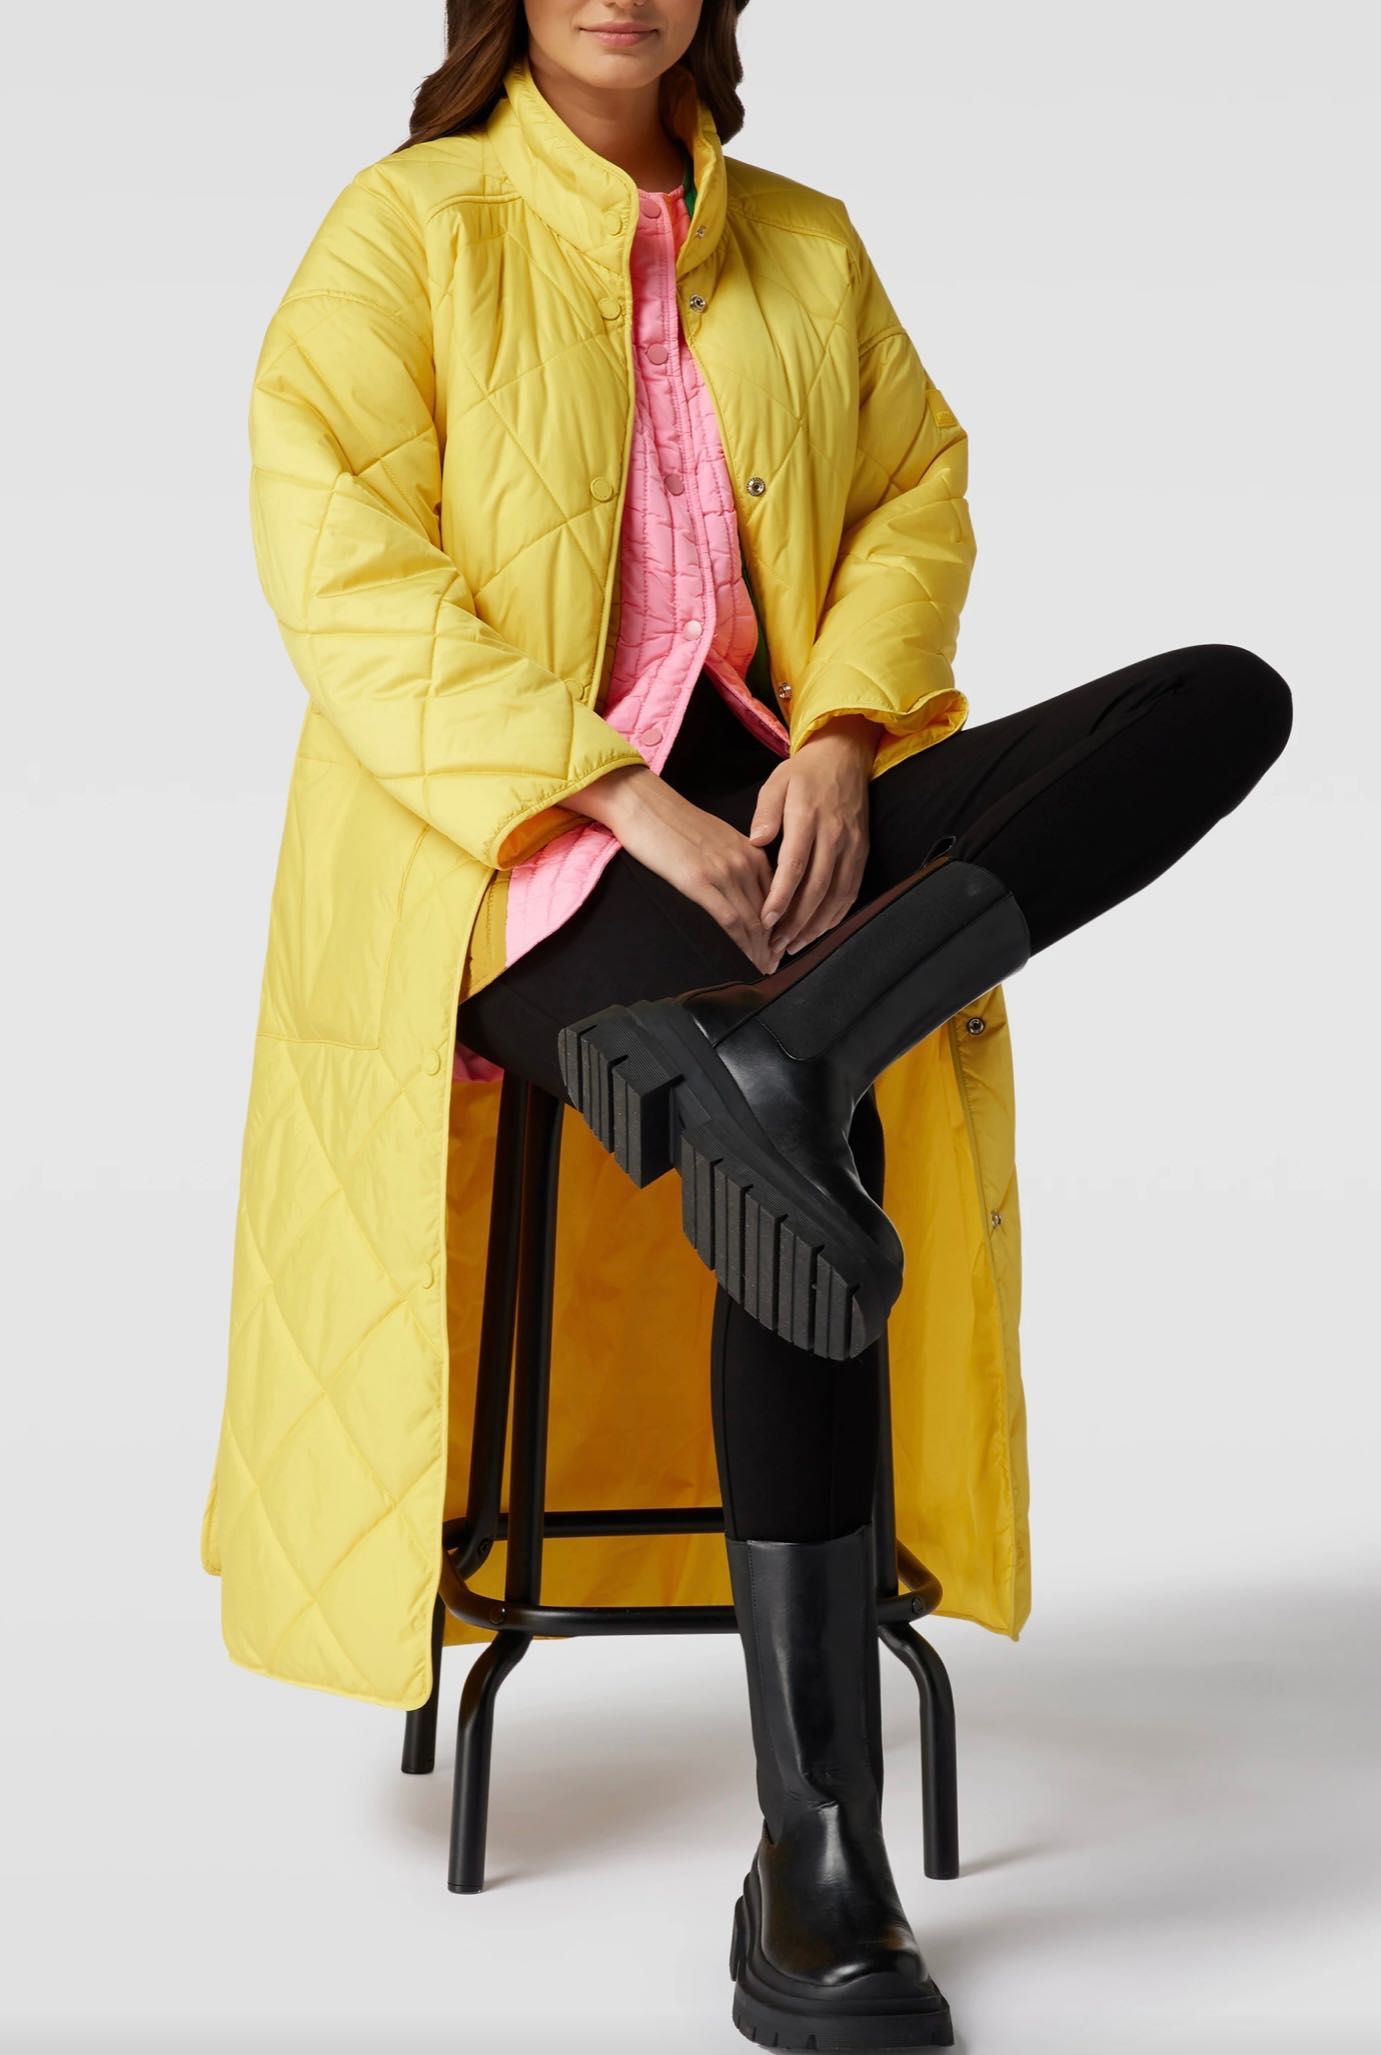 Płaszcz puchowy kurtka Marc’o Polo Denim żółty rozmiar M